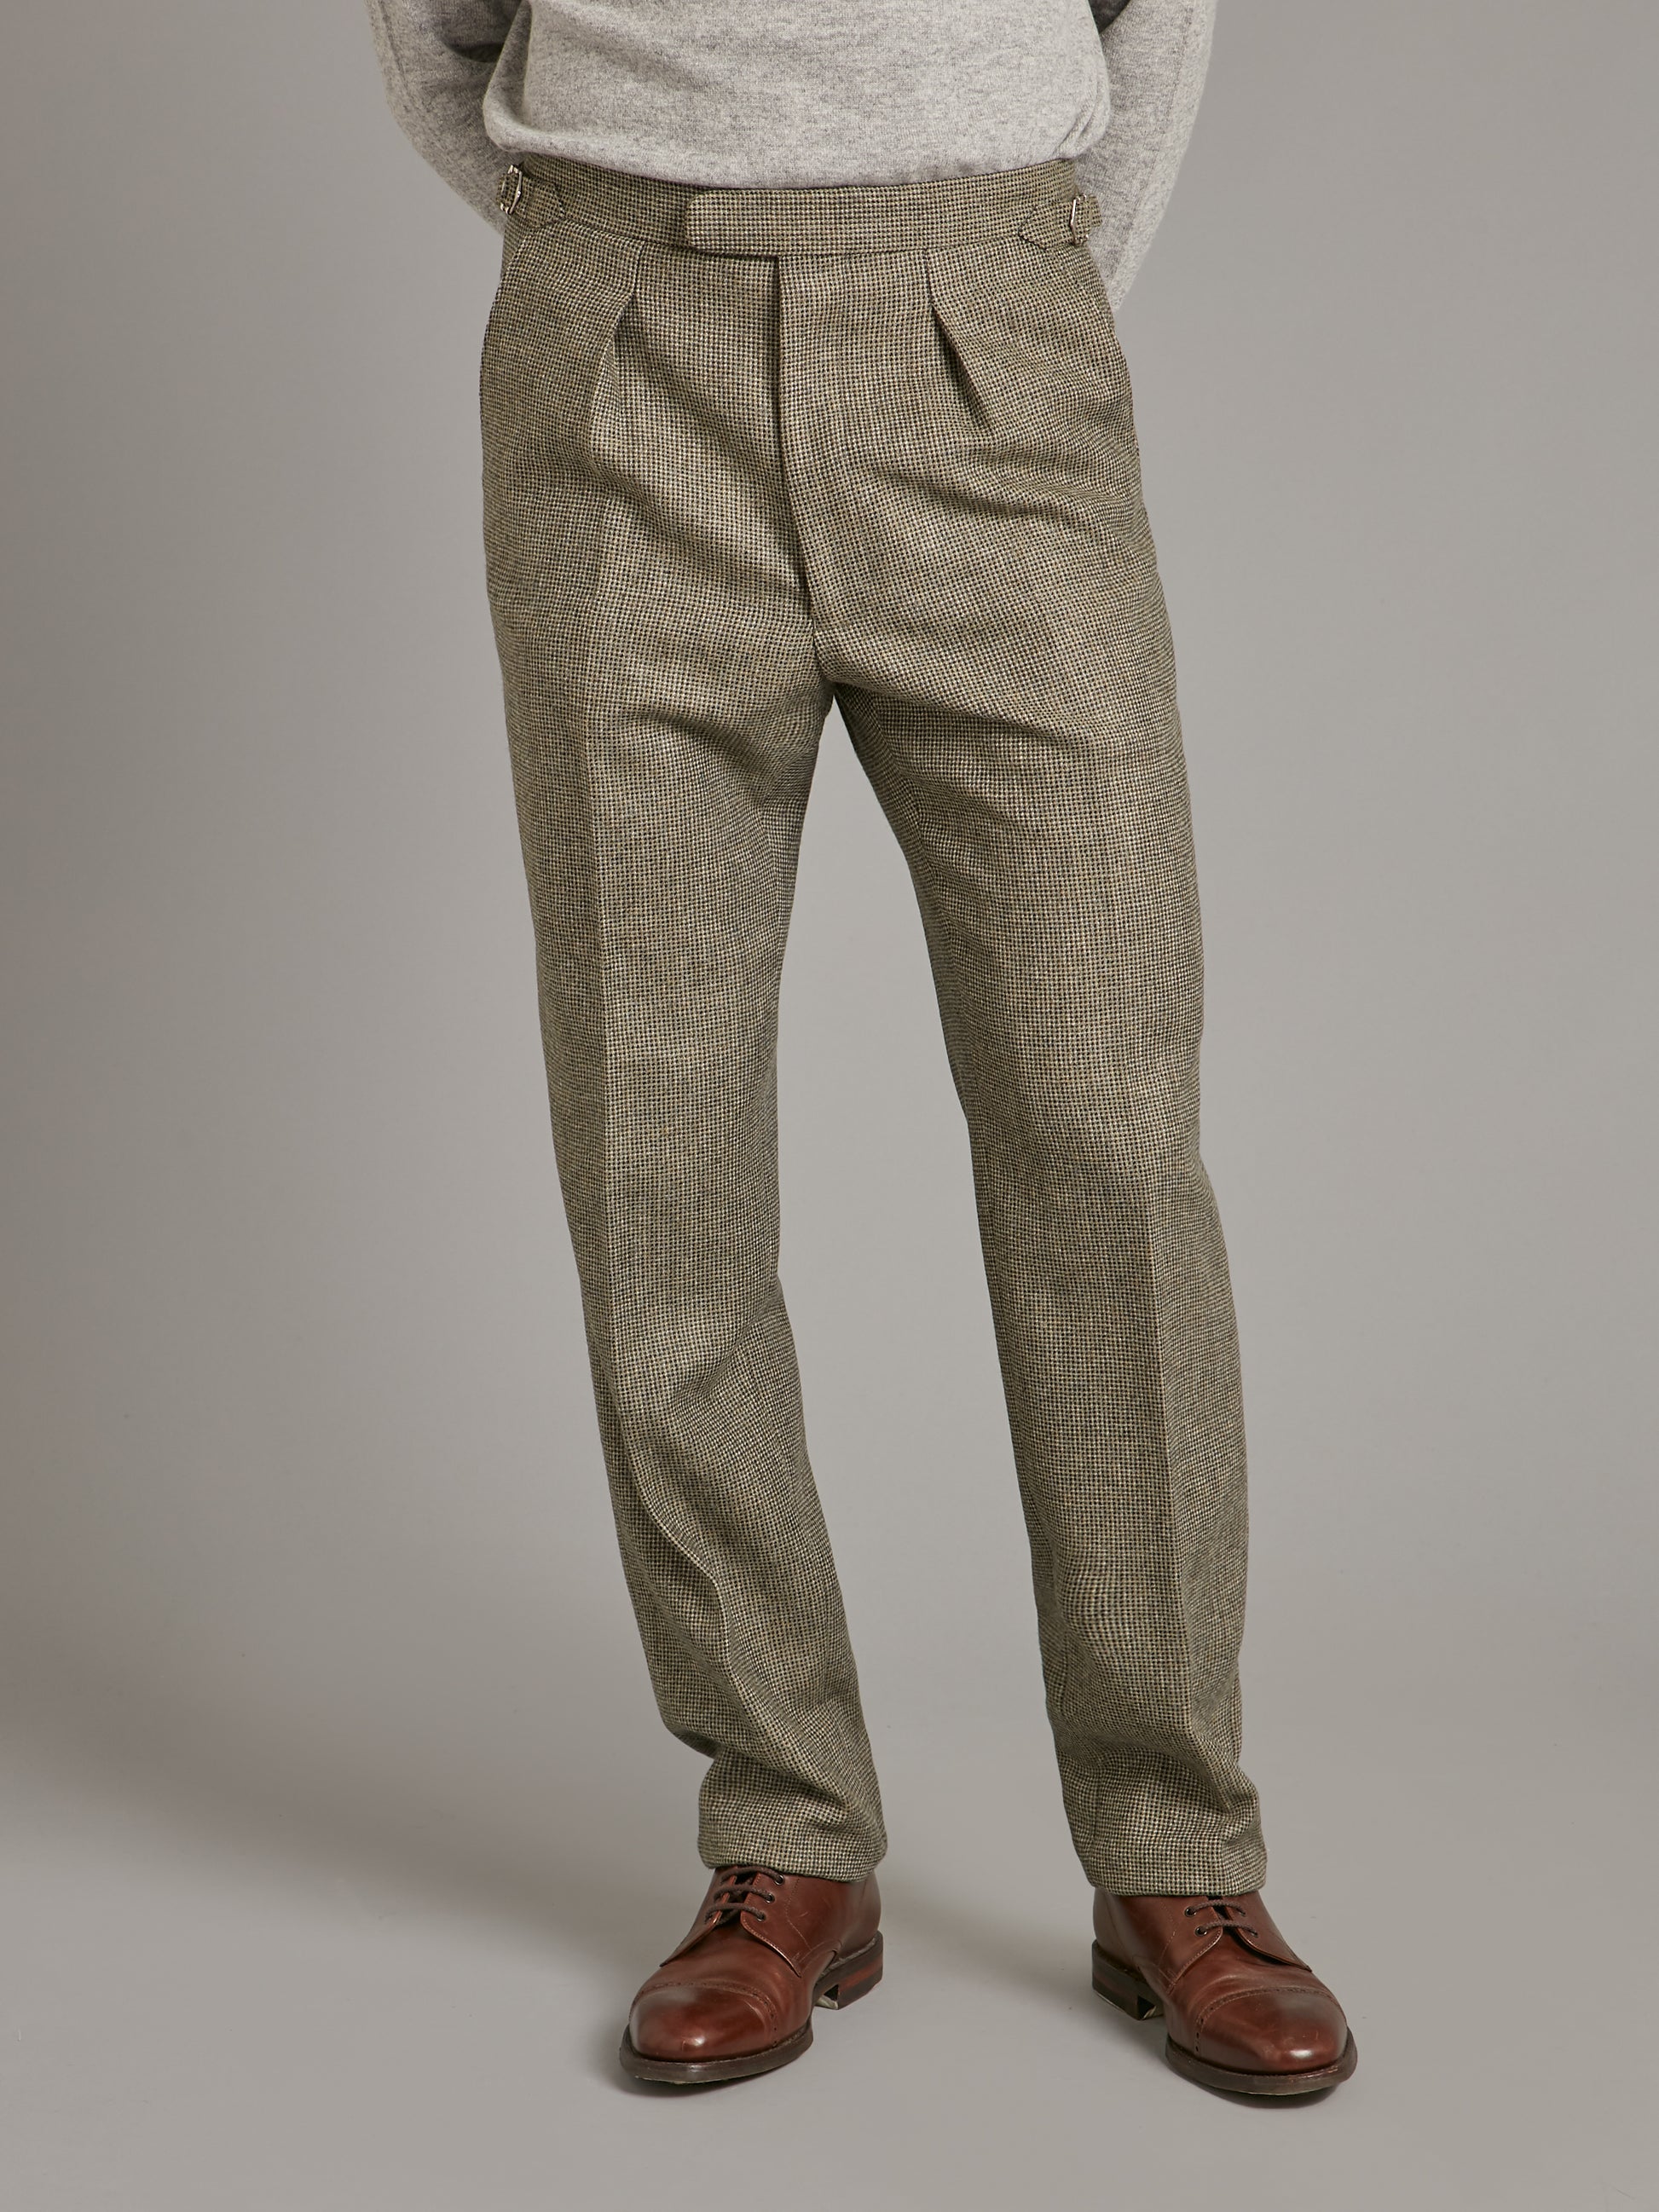 Pleated Trousers - Nailhead Tweed - Cool Sage, Men's Tweed Trousers